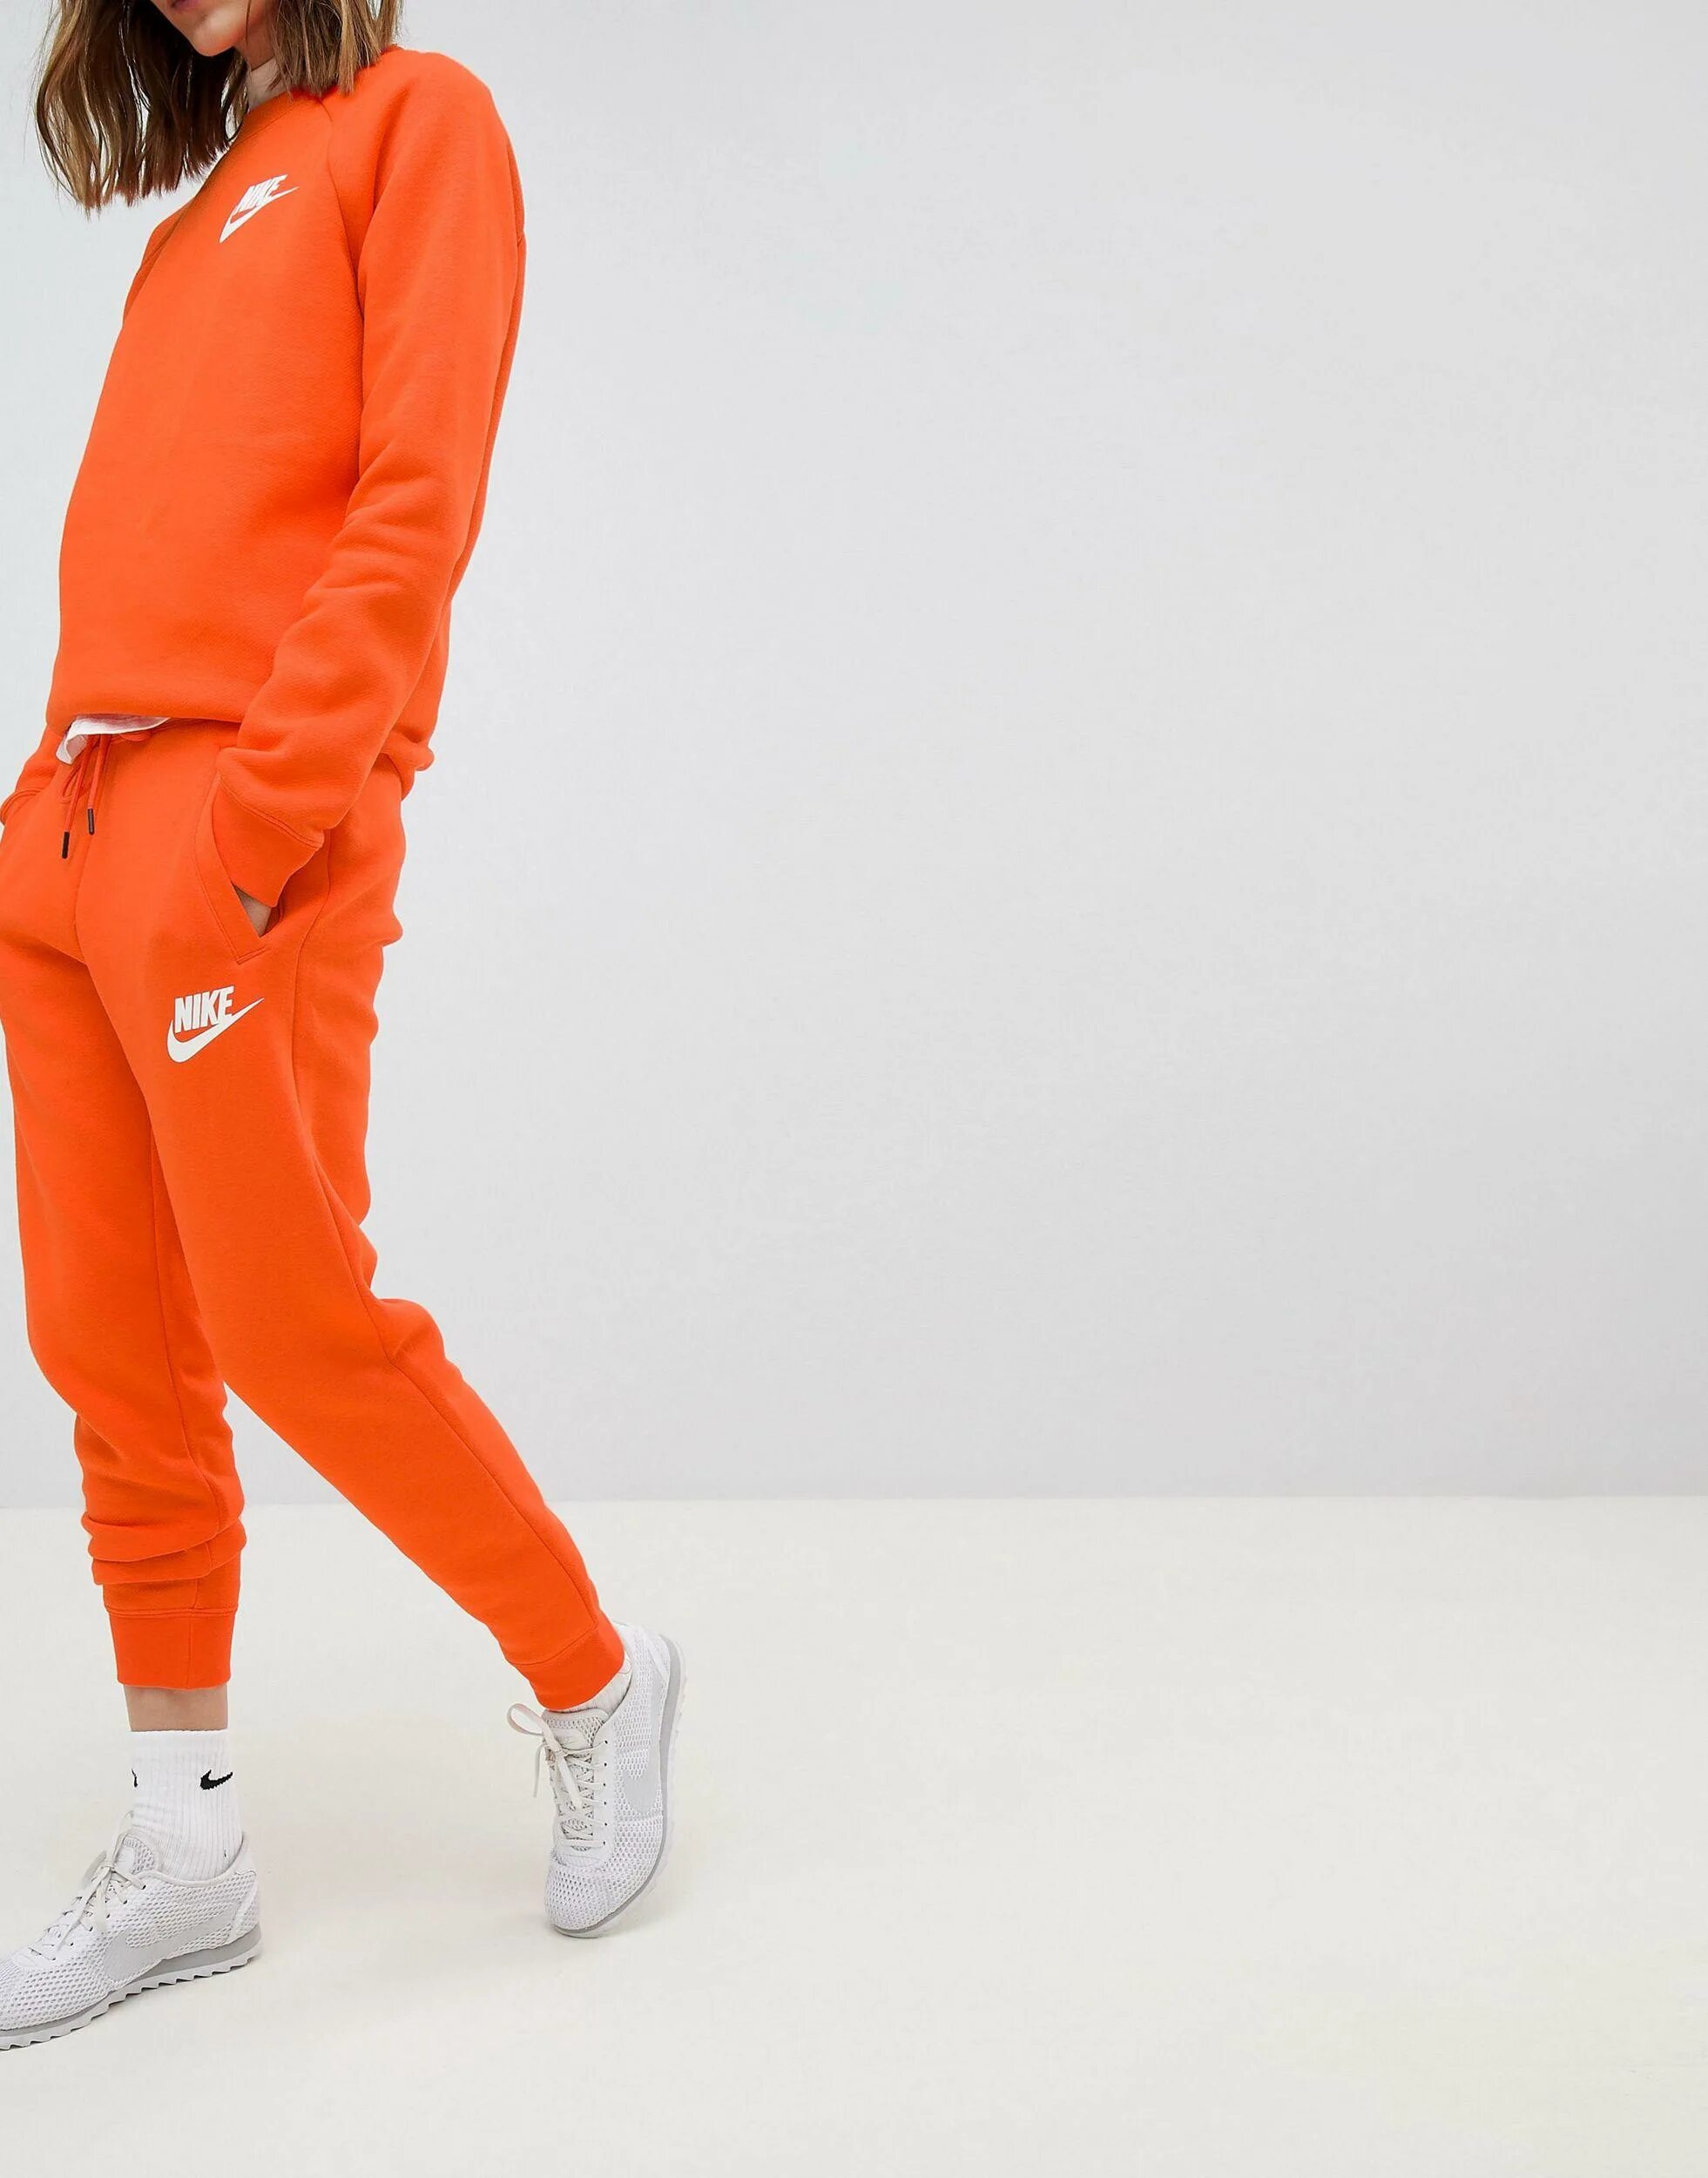 Оранжевый спортивный костюм. Костюм Nike Drill оранжевый. Оранжевый костюм найк мужской. Nike костюм спортивный оранжевый Drill. Джоггеры найк оранжевые.